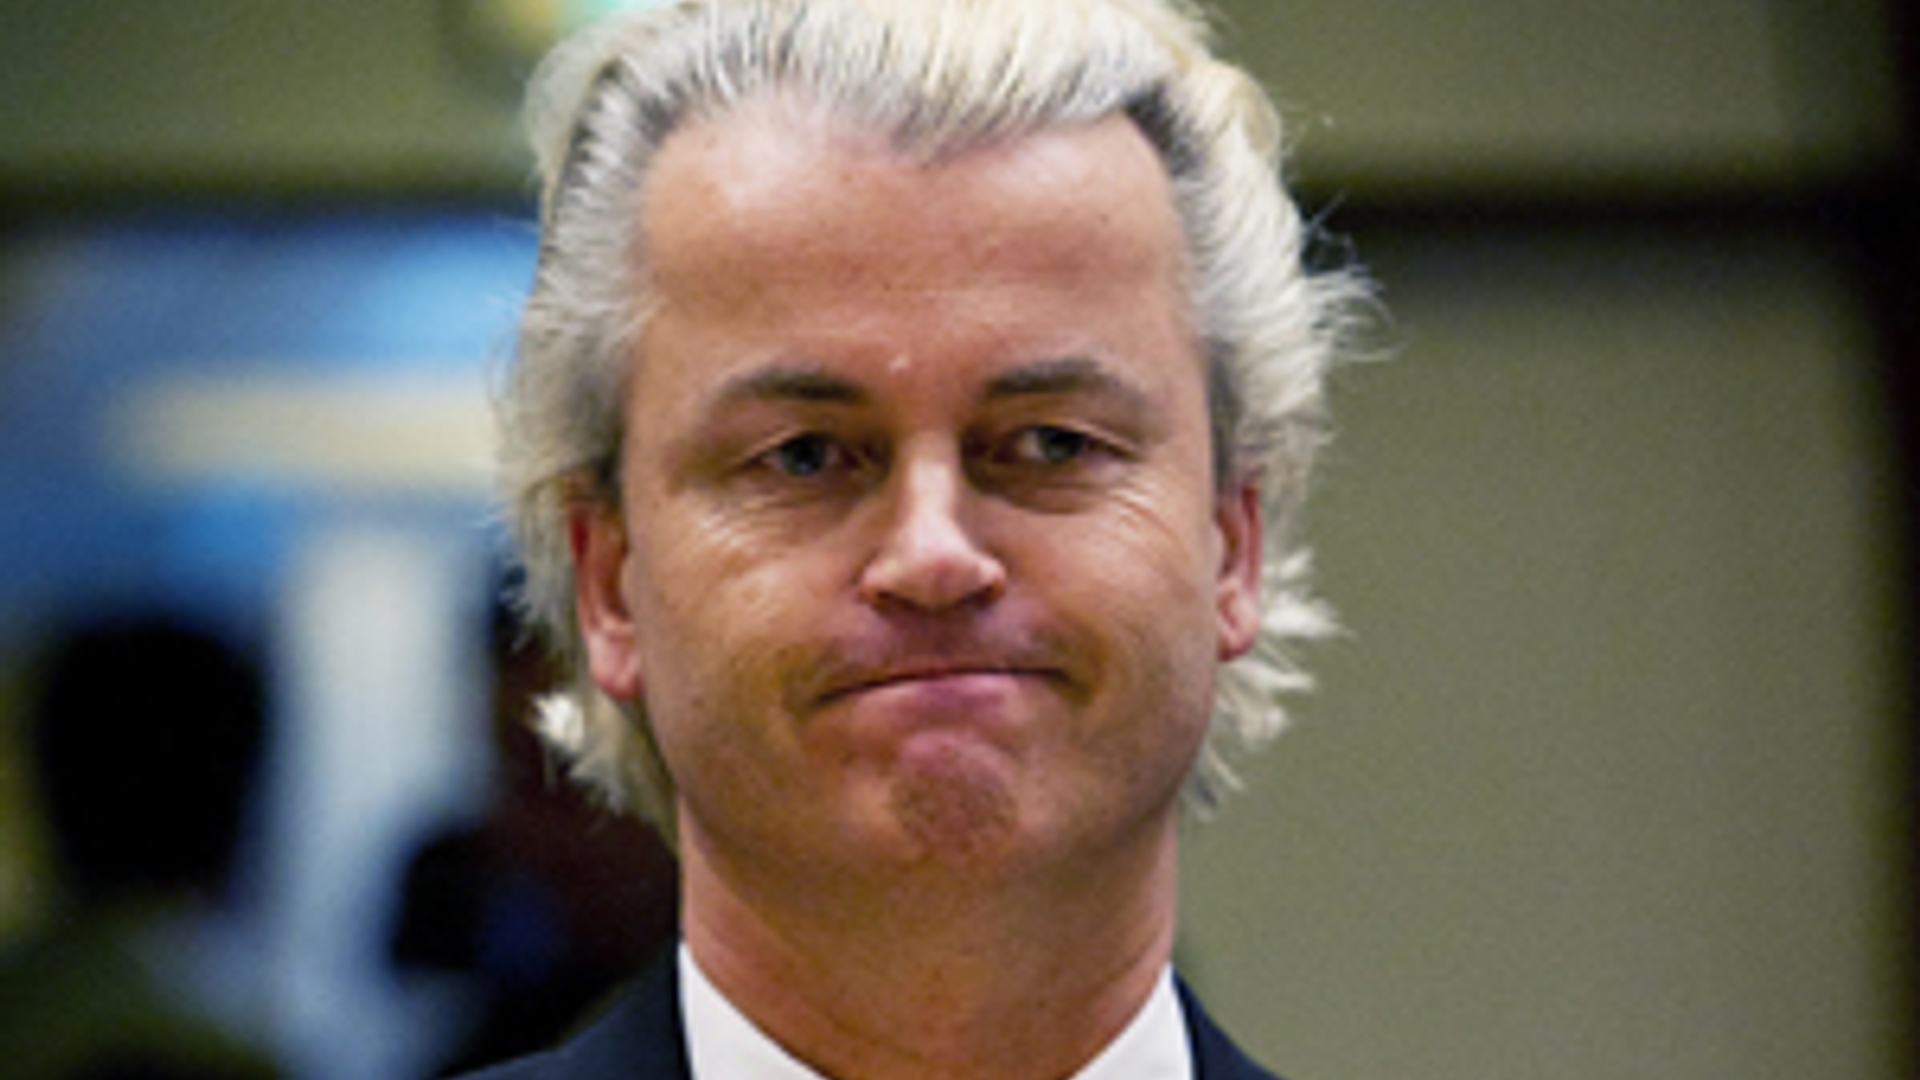 ANP-Wilders_damn_300_01.jpg